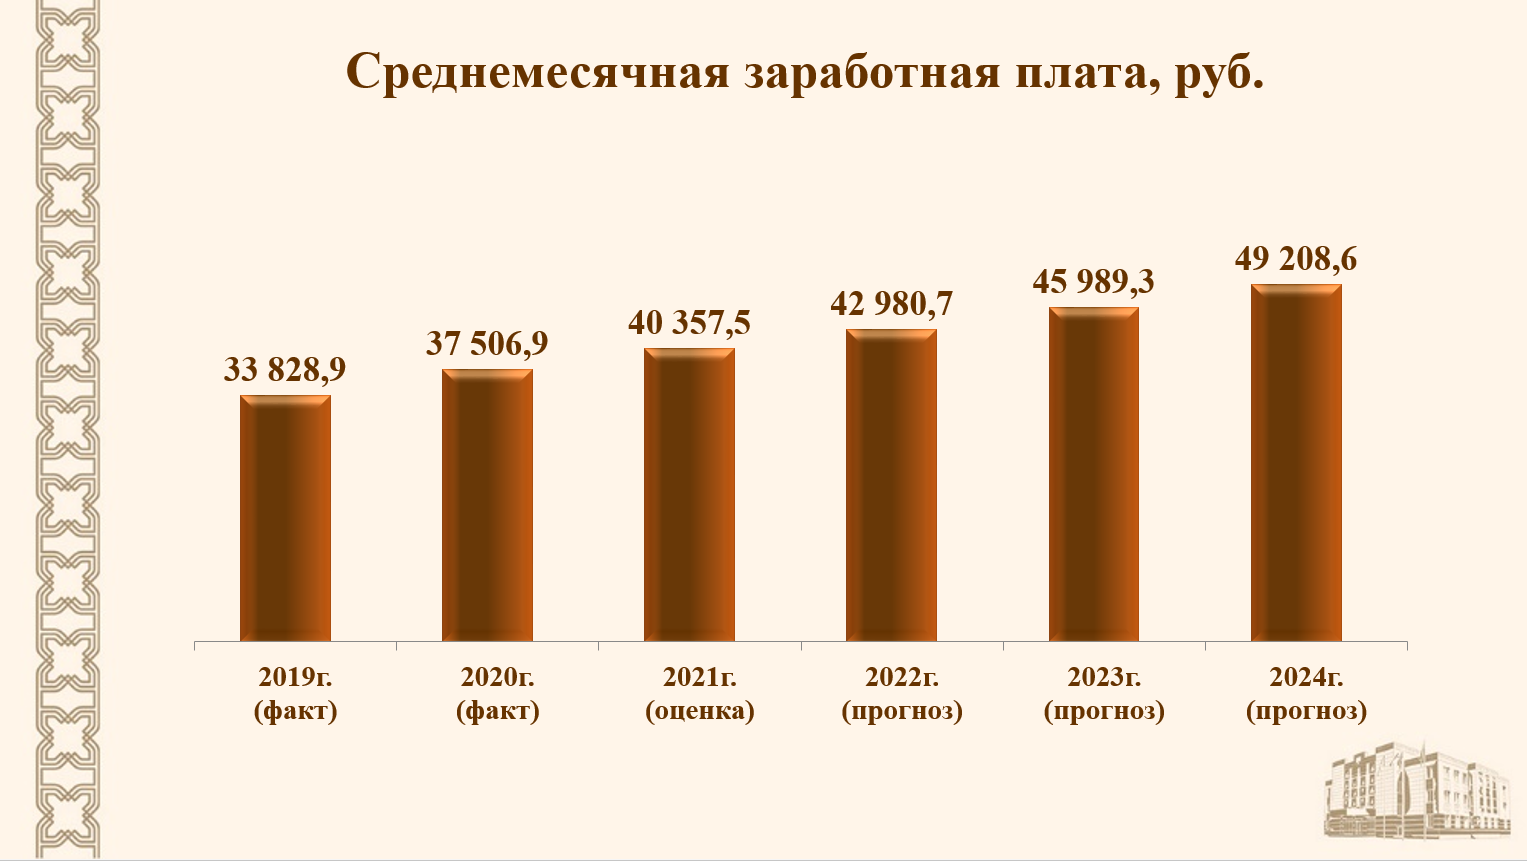 Мин зарплата в 2024 году. Заработная плата сокращение. Рост зарплаты. Татарстан уровень безработицы 2020 год. Снижение заработной платы 2008.